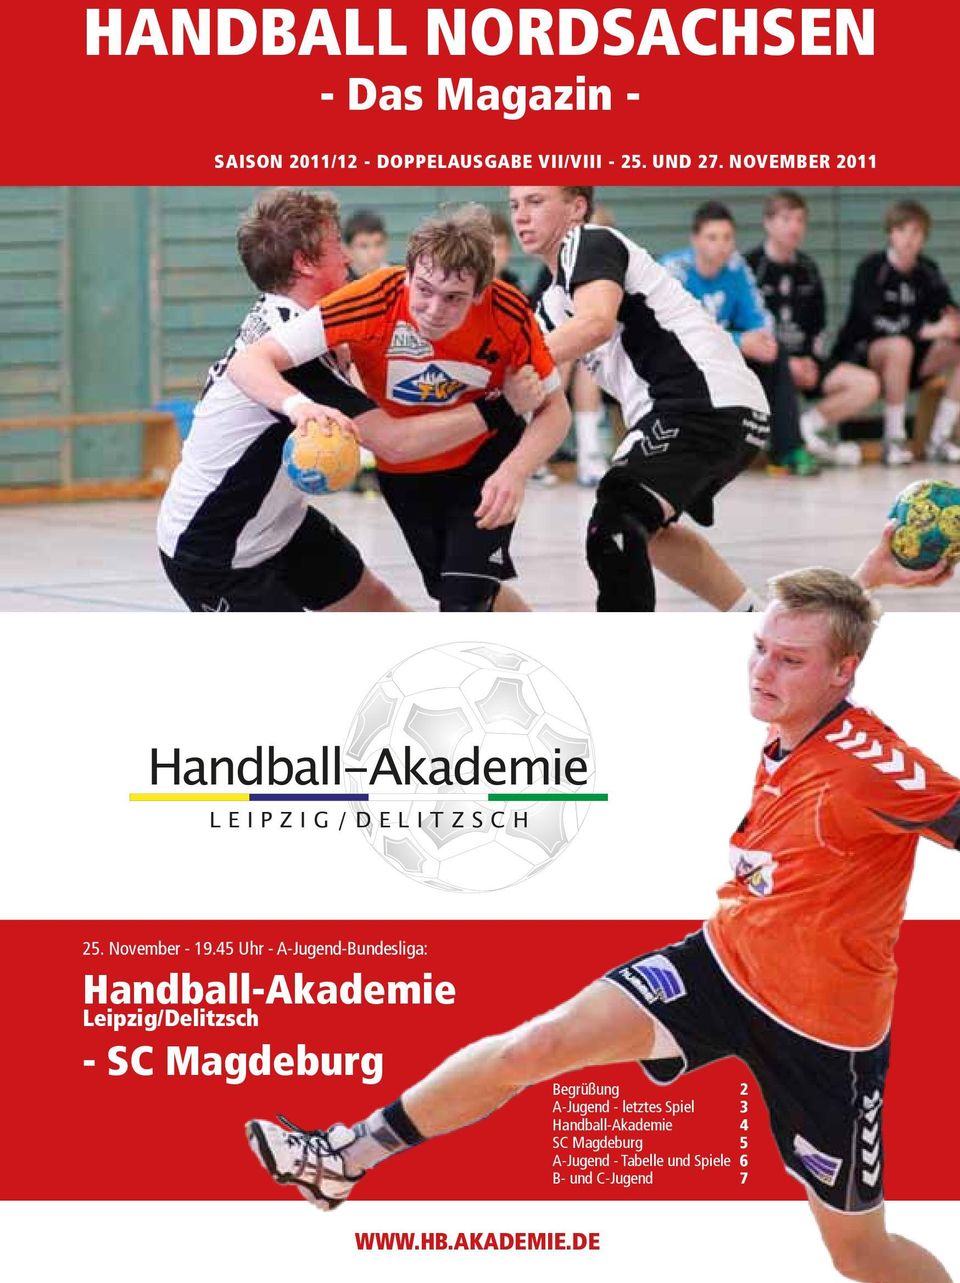 45 Uhr - A-Jugend-Bundesliga: Handball-Akademie Leipzig/Delitzsch - SC Magdeburg Begrüßung 2